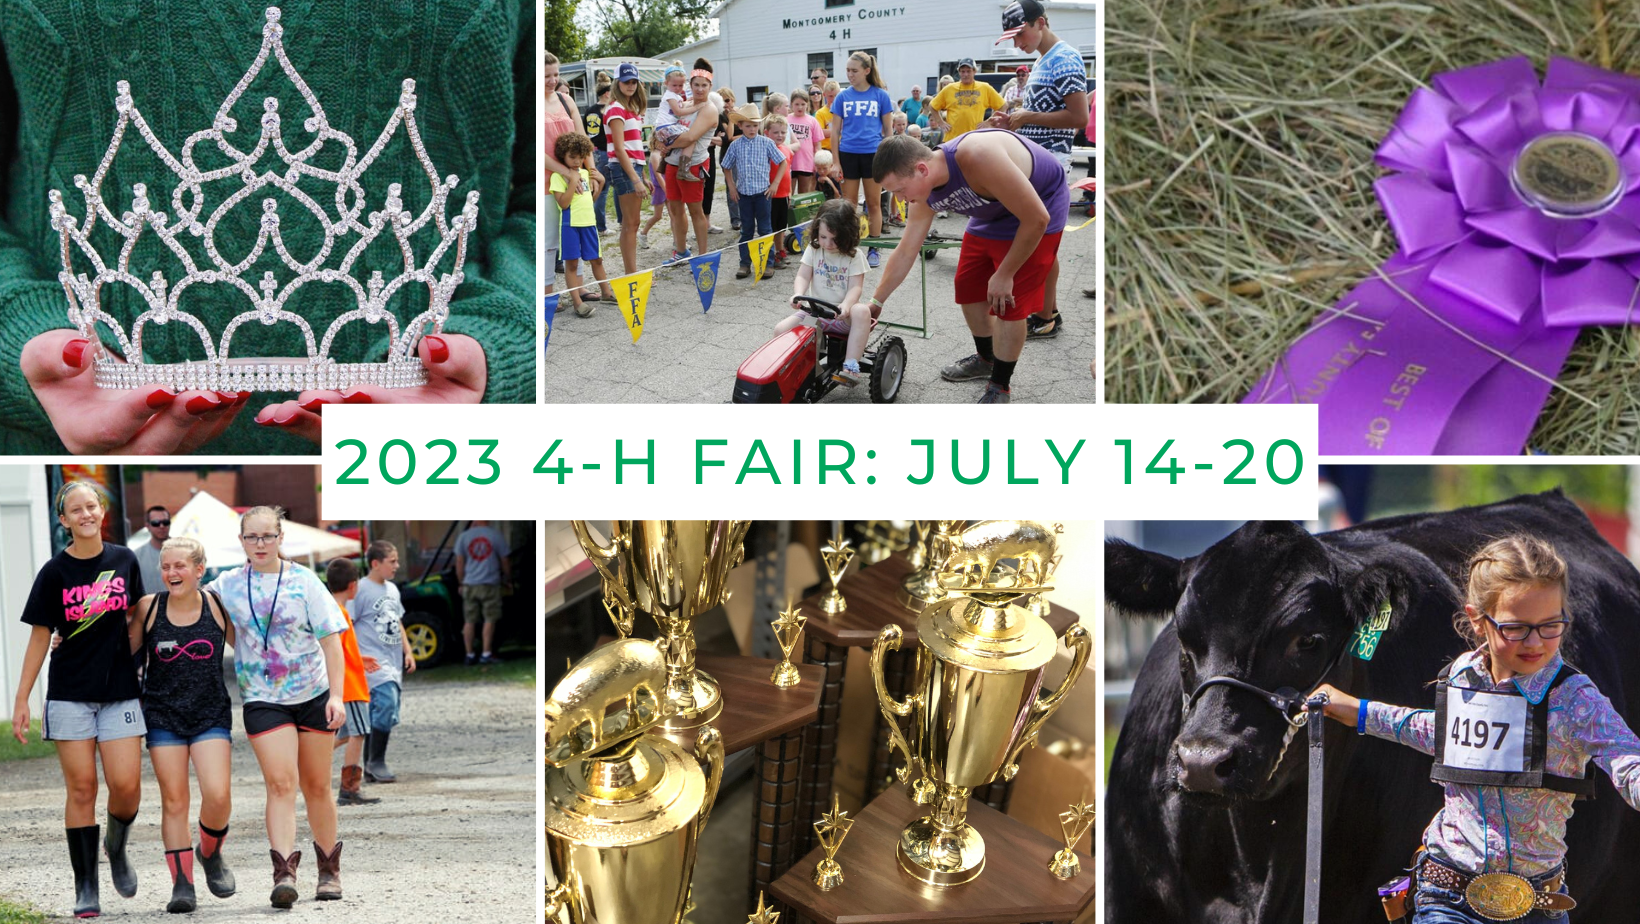 2023 4-H Fair July 14-20